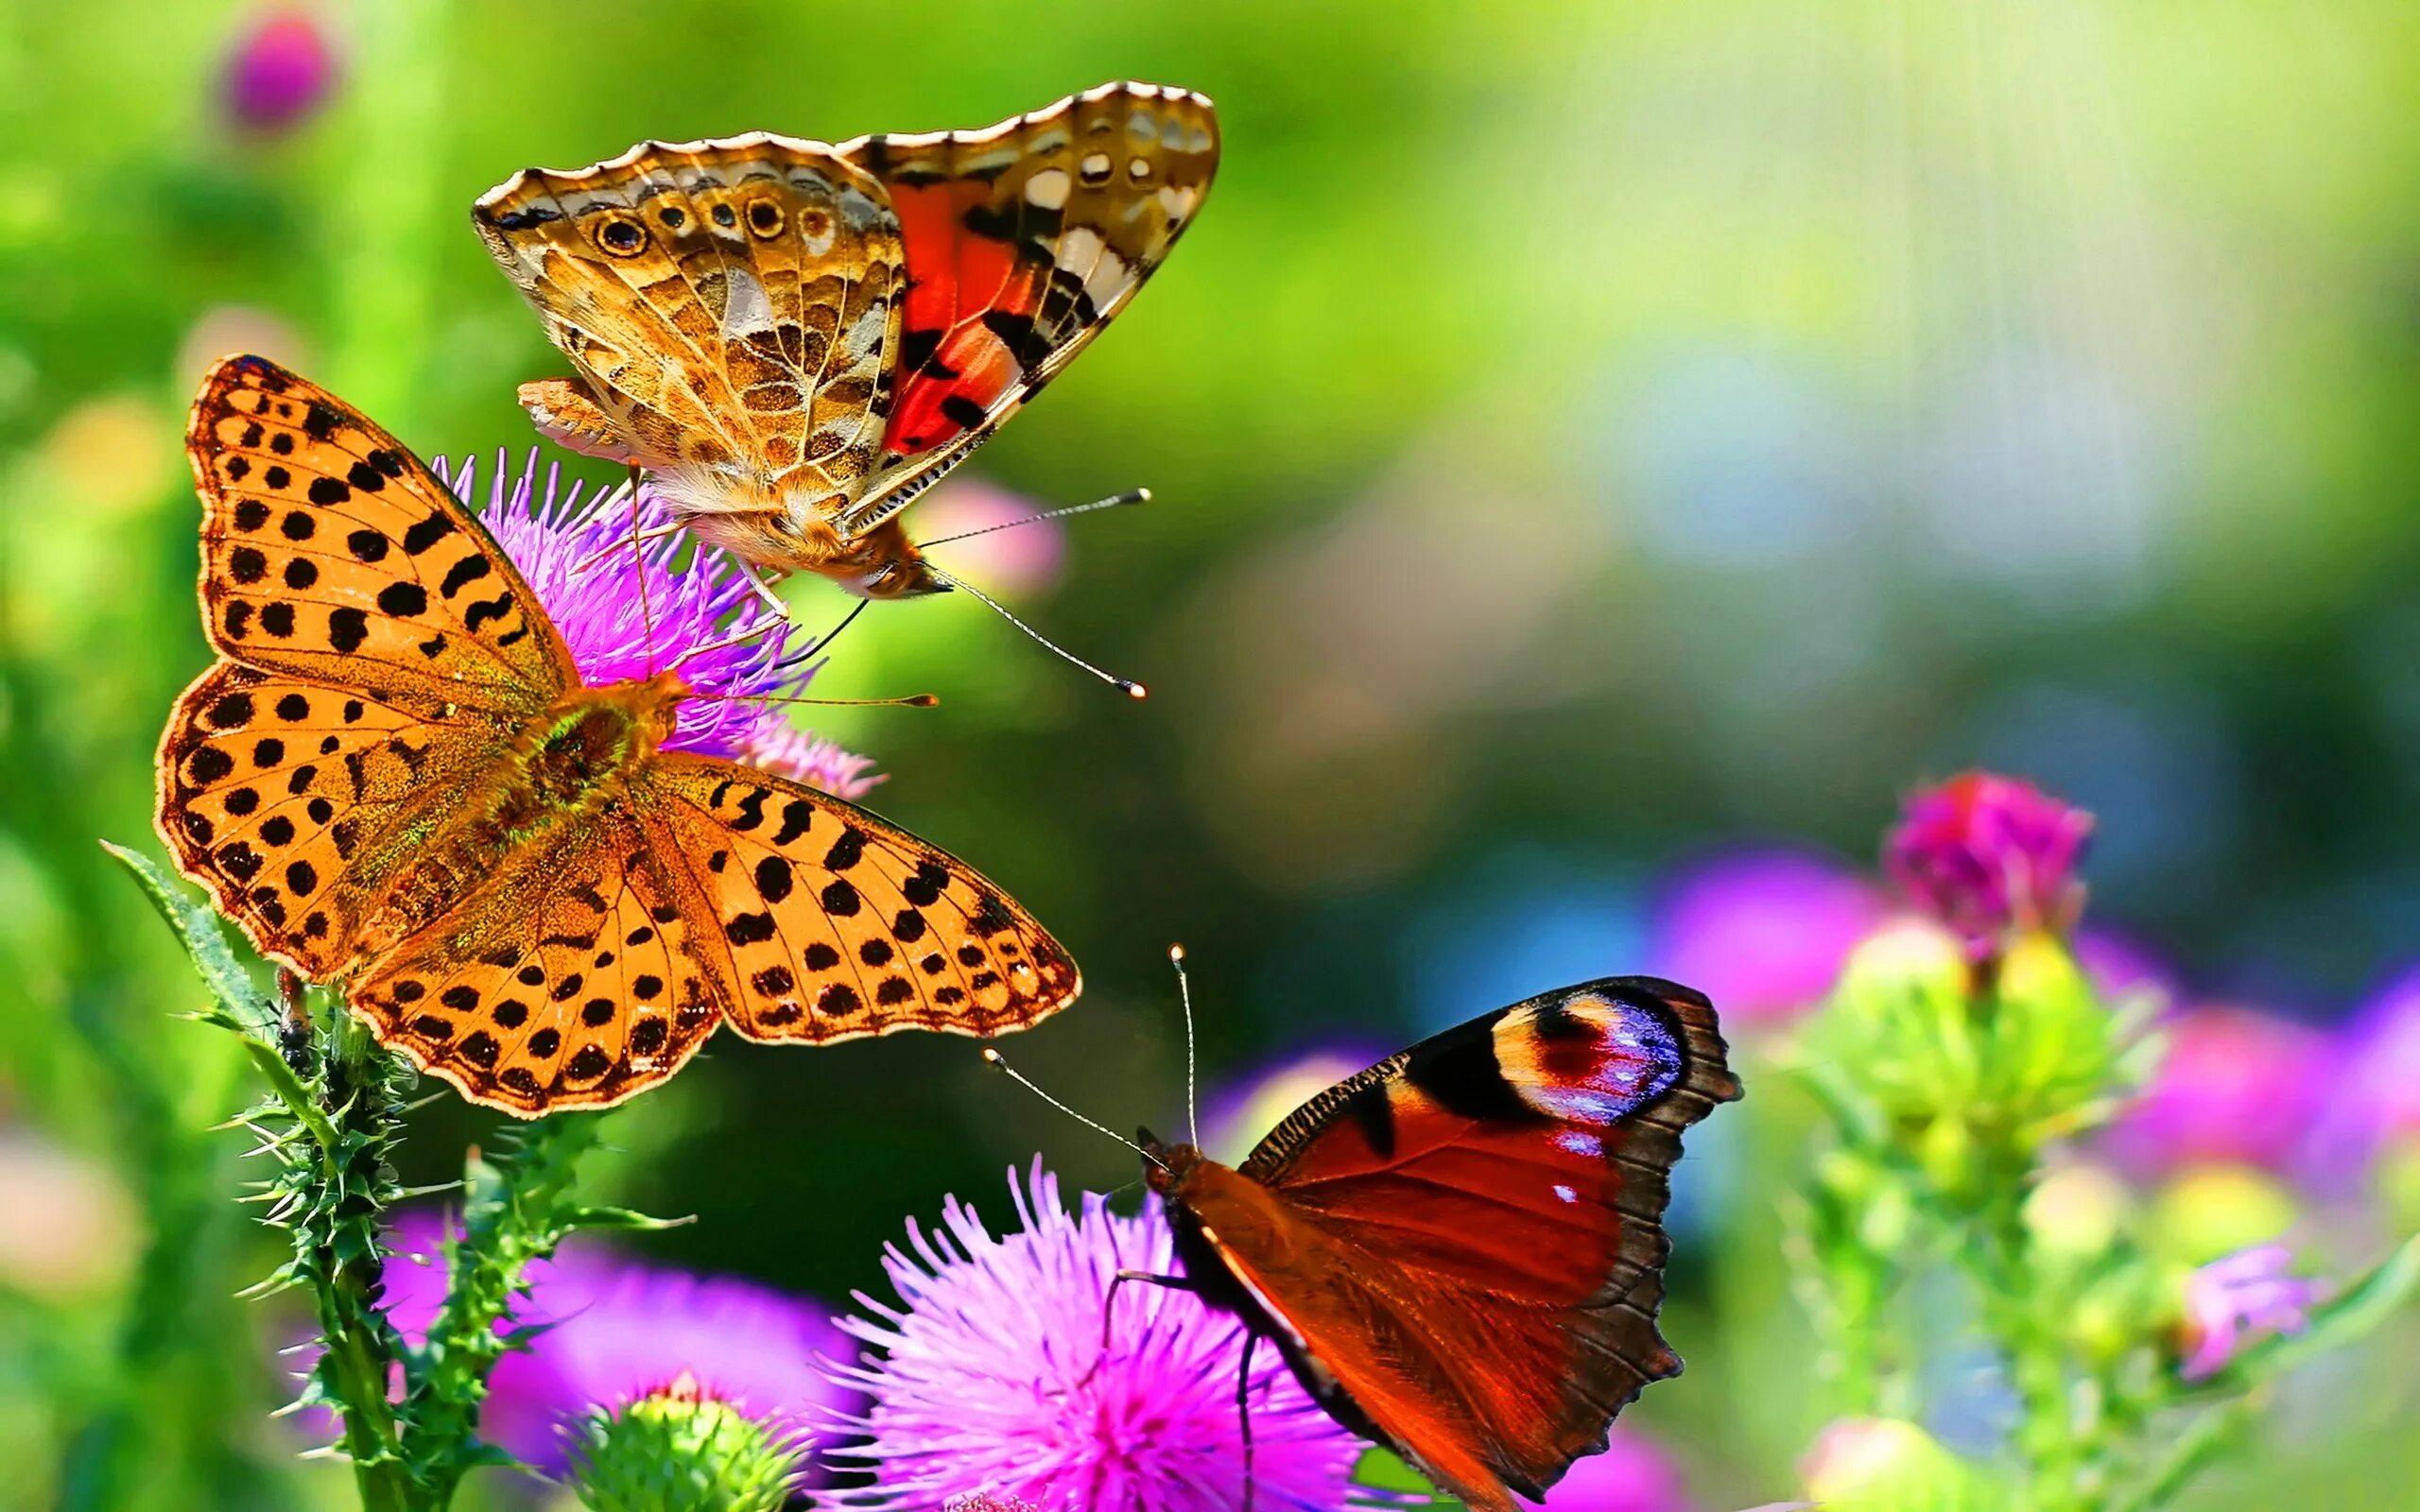 Бесплатные картинки на заставку телефона. Бабочка на цветке. Красивые обои на рабочий стол. Яркая природа. Заставка на рабочий стол лето.